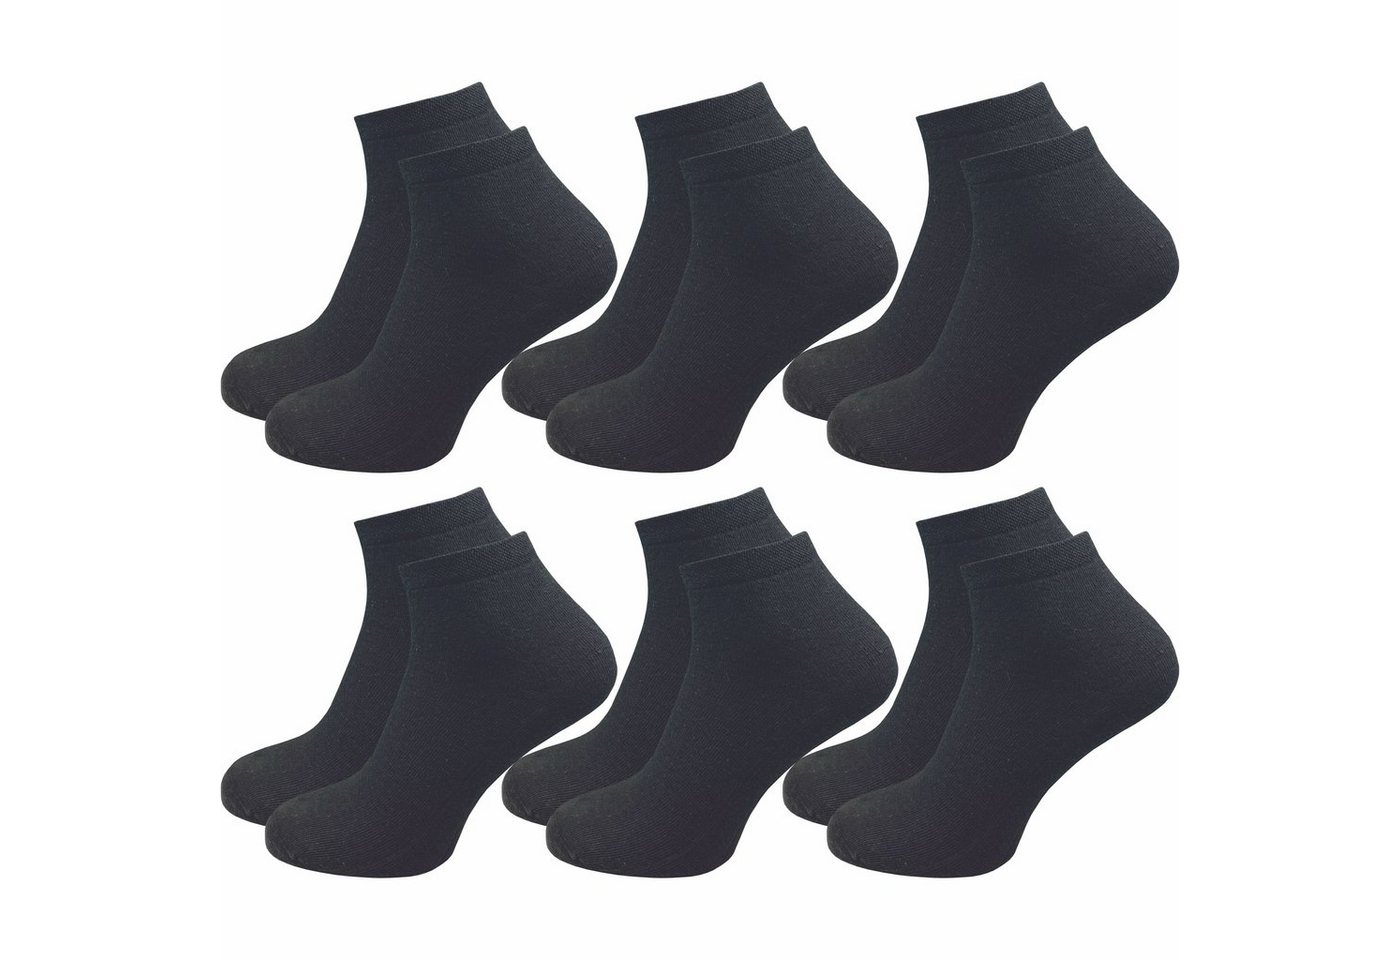 GAWILO Kurzsocken für Damen - Quartersocken in weiß und schwarz - ohne drückende Naht (6 Paar) Schaft etwas länger als bei einer Sneaker Socke, daher kein rutschen von GAWILO